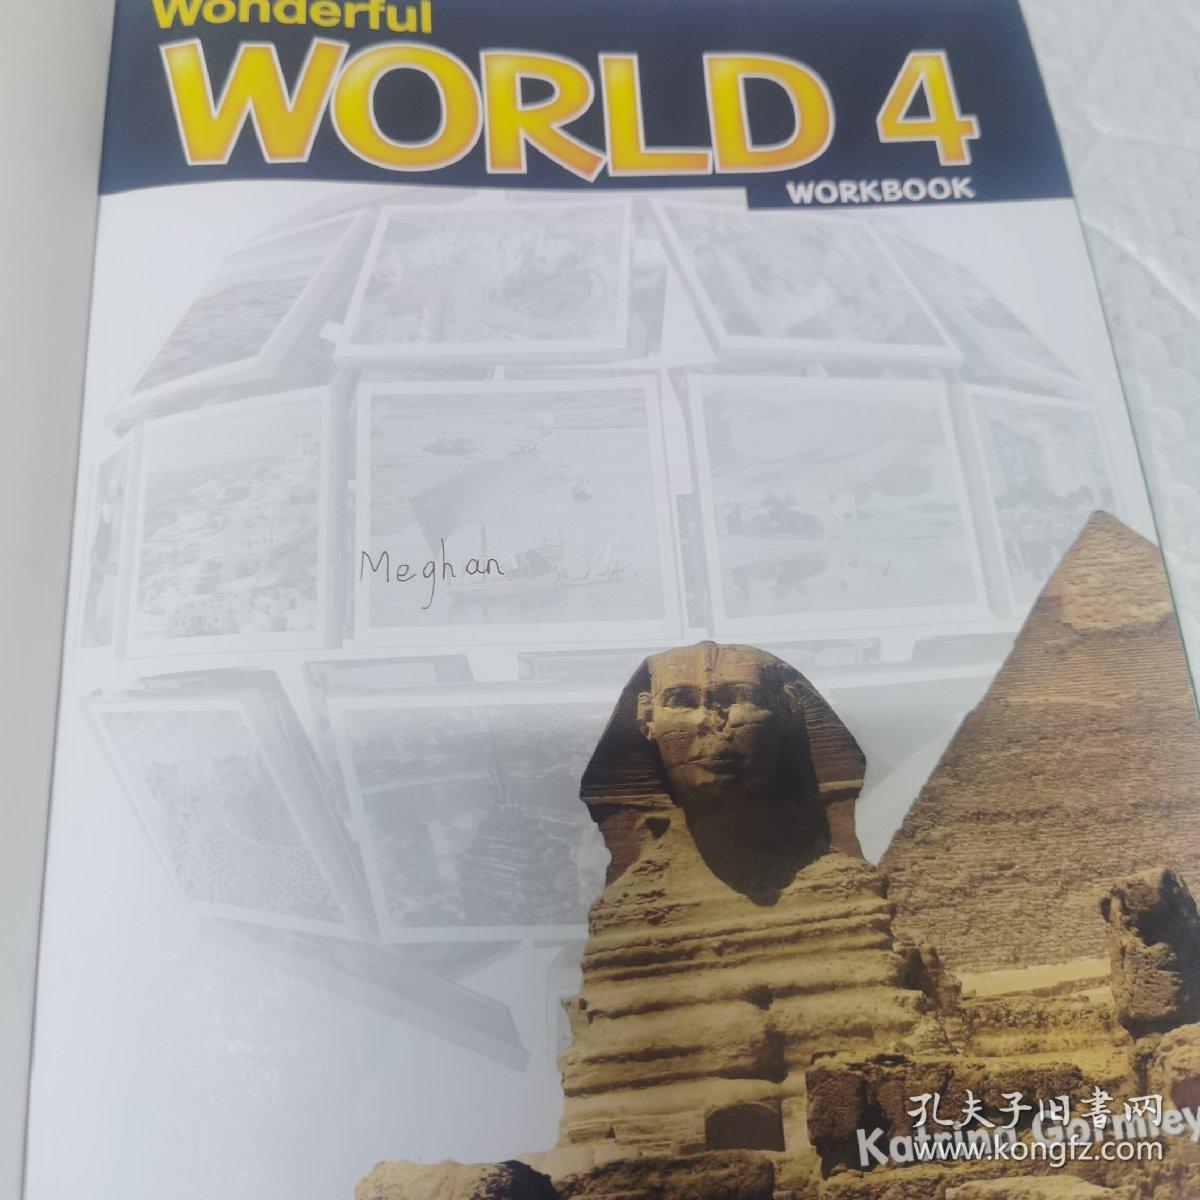 Wonderful WORLD 4 WORKBOOK